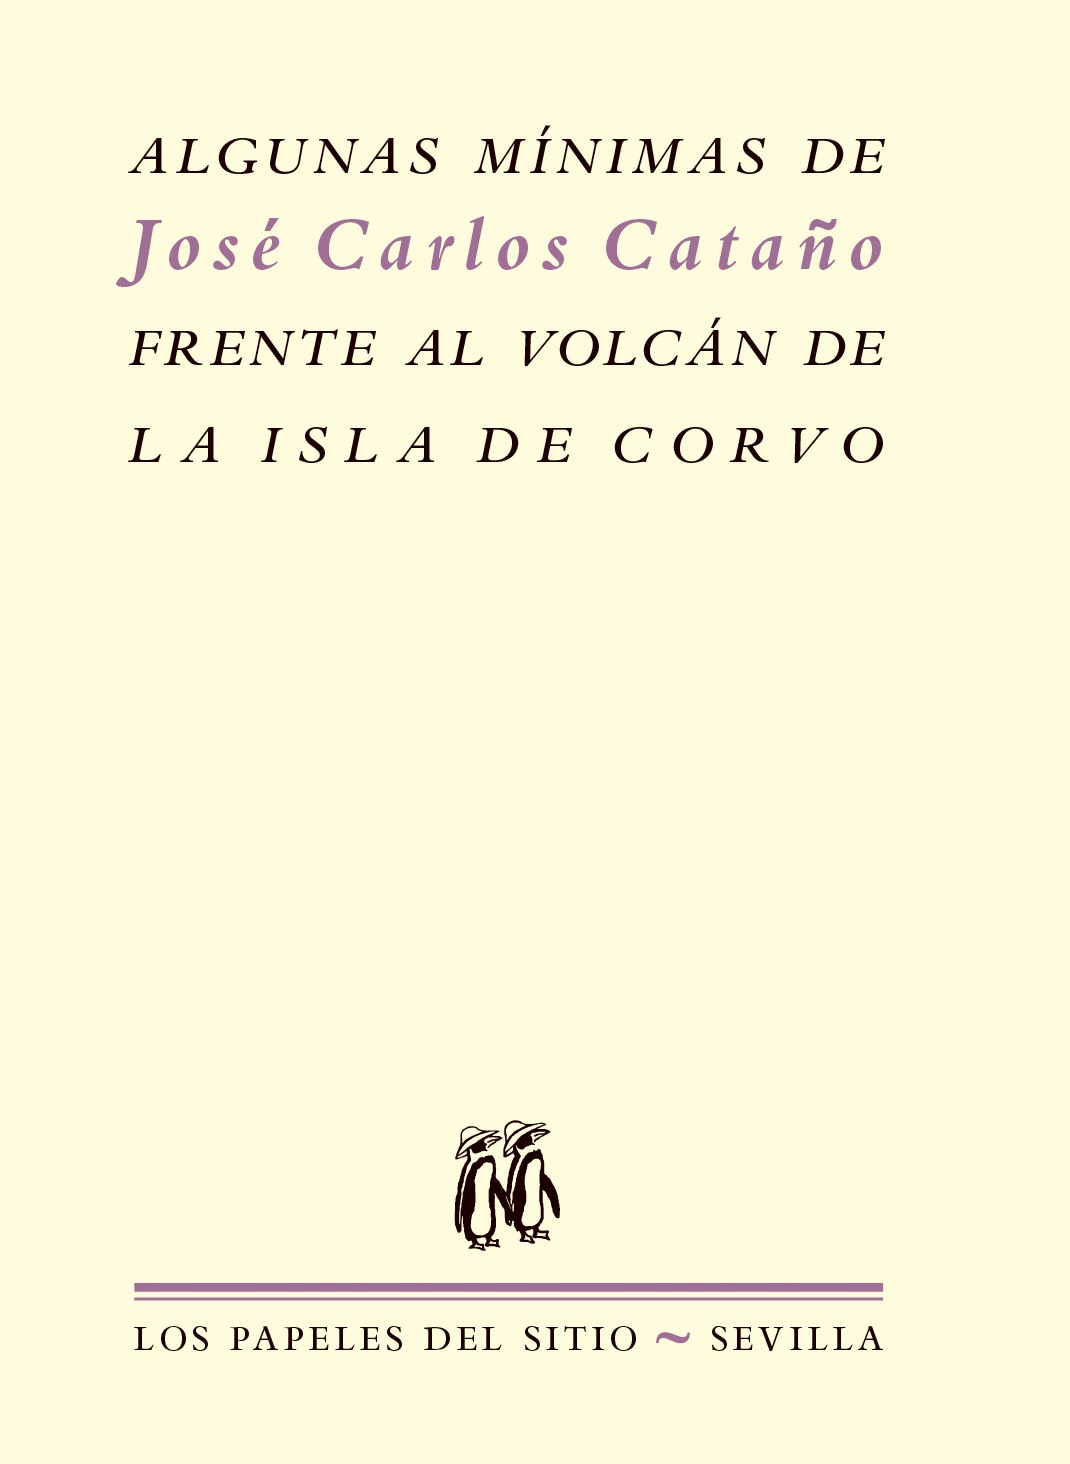 Algunas mínimas de José Carlos Cataño frente al volcán de la isla de Corvo